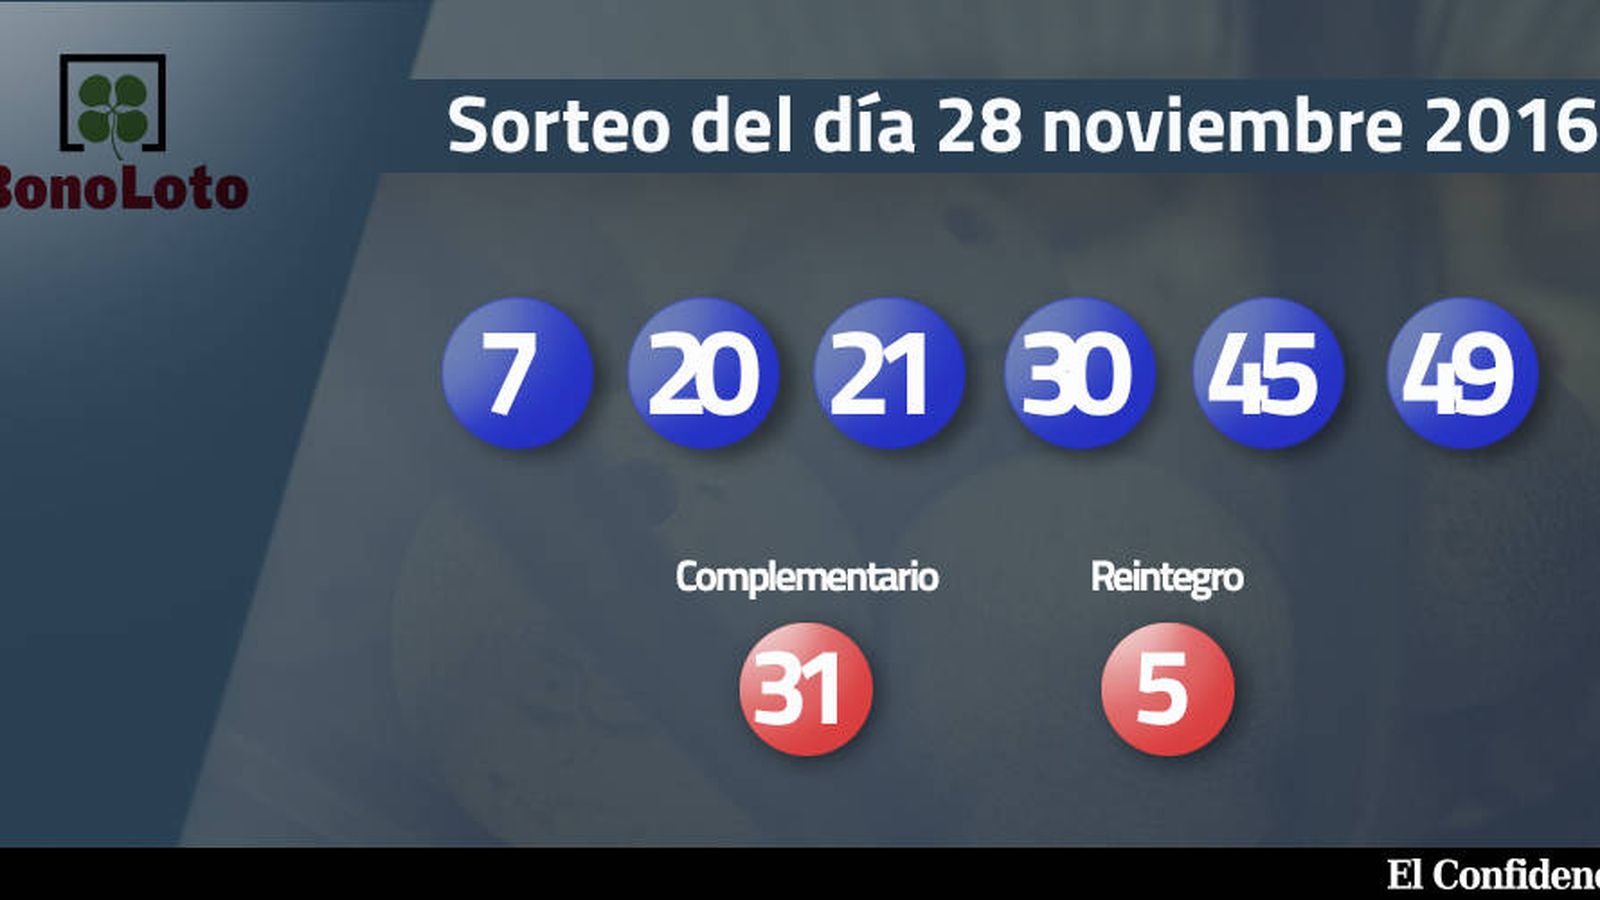 Foto: Resultados del sorteo de la Bonoloto del 28 noviembre 2016 (EC)